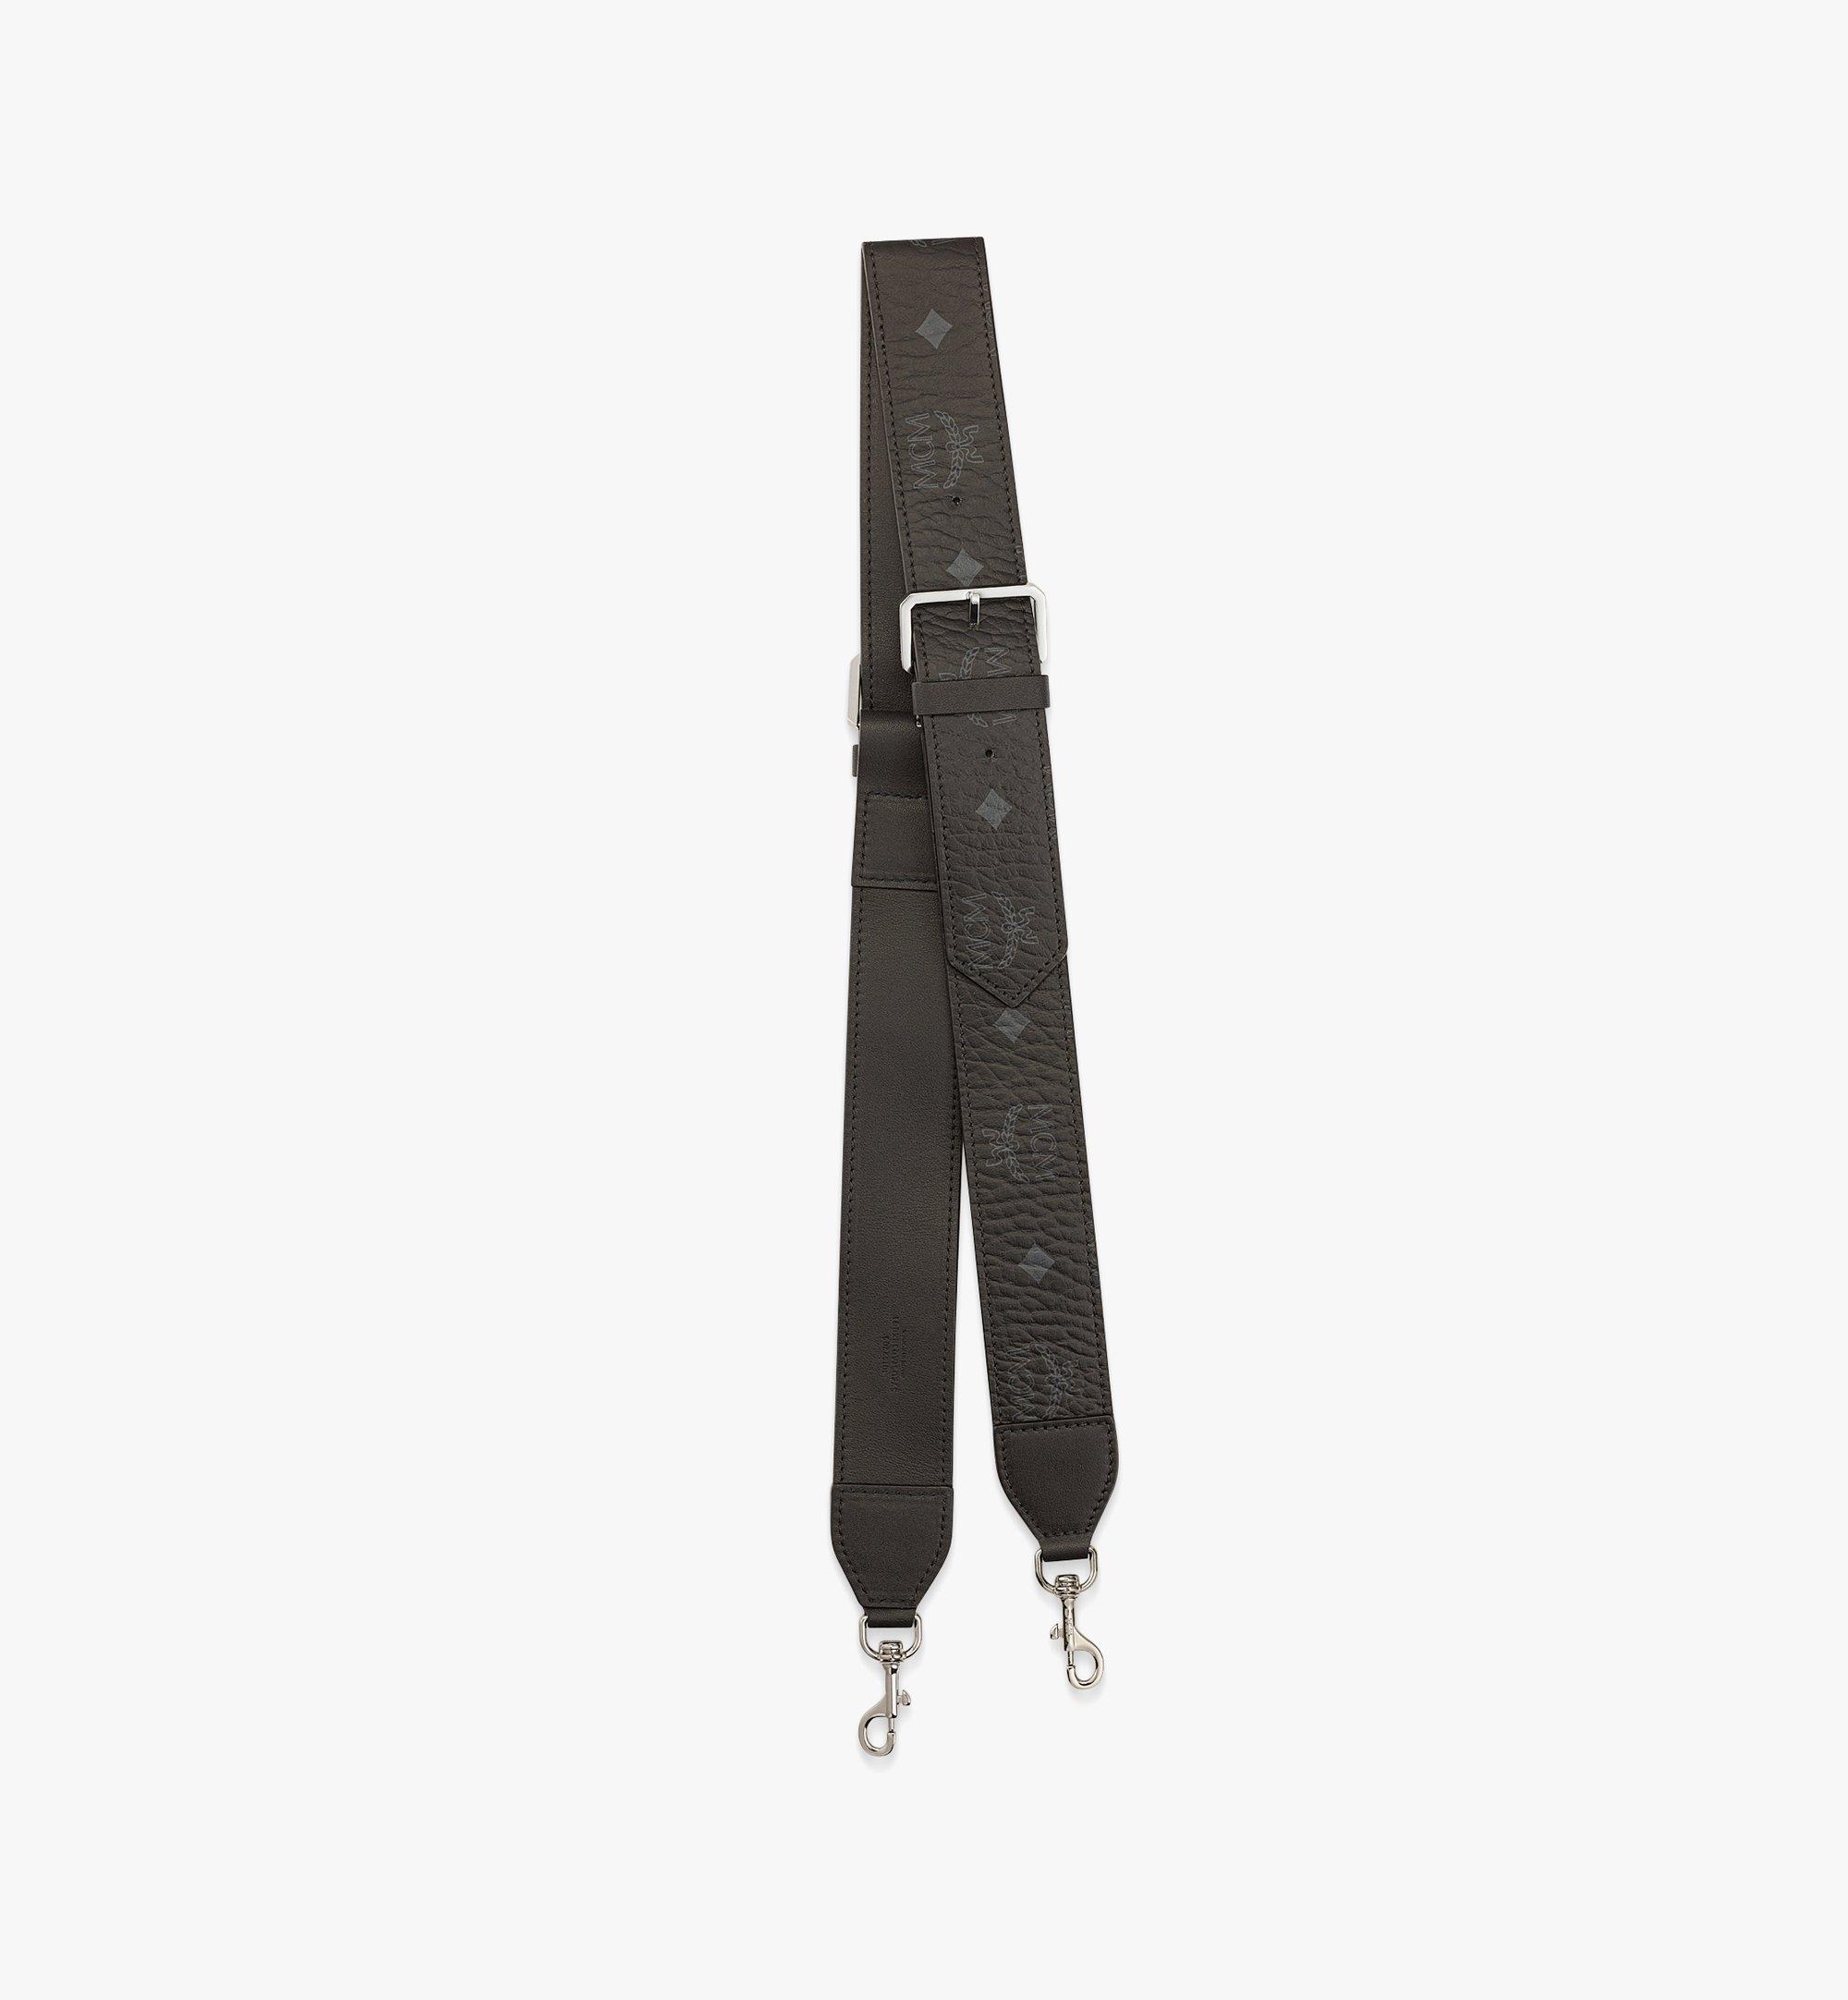 Purse Straps Replacement Crossbody Bag Strap Handbag Straps Sling Bag  Shoulder Bag Strap Solid Silver Clasp Dark Pink